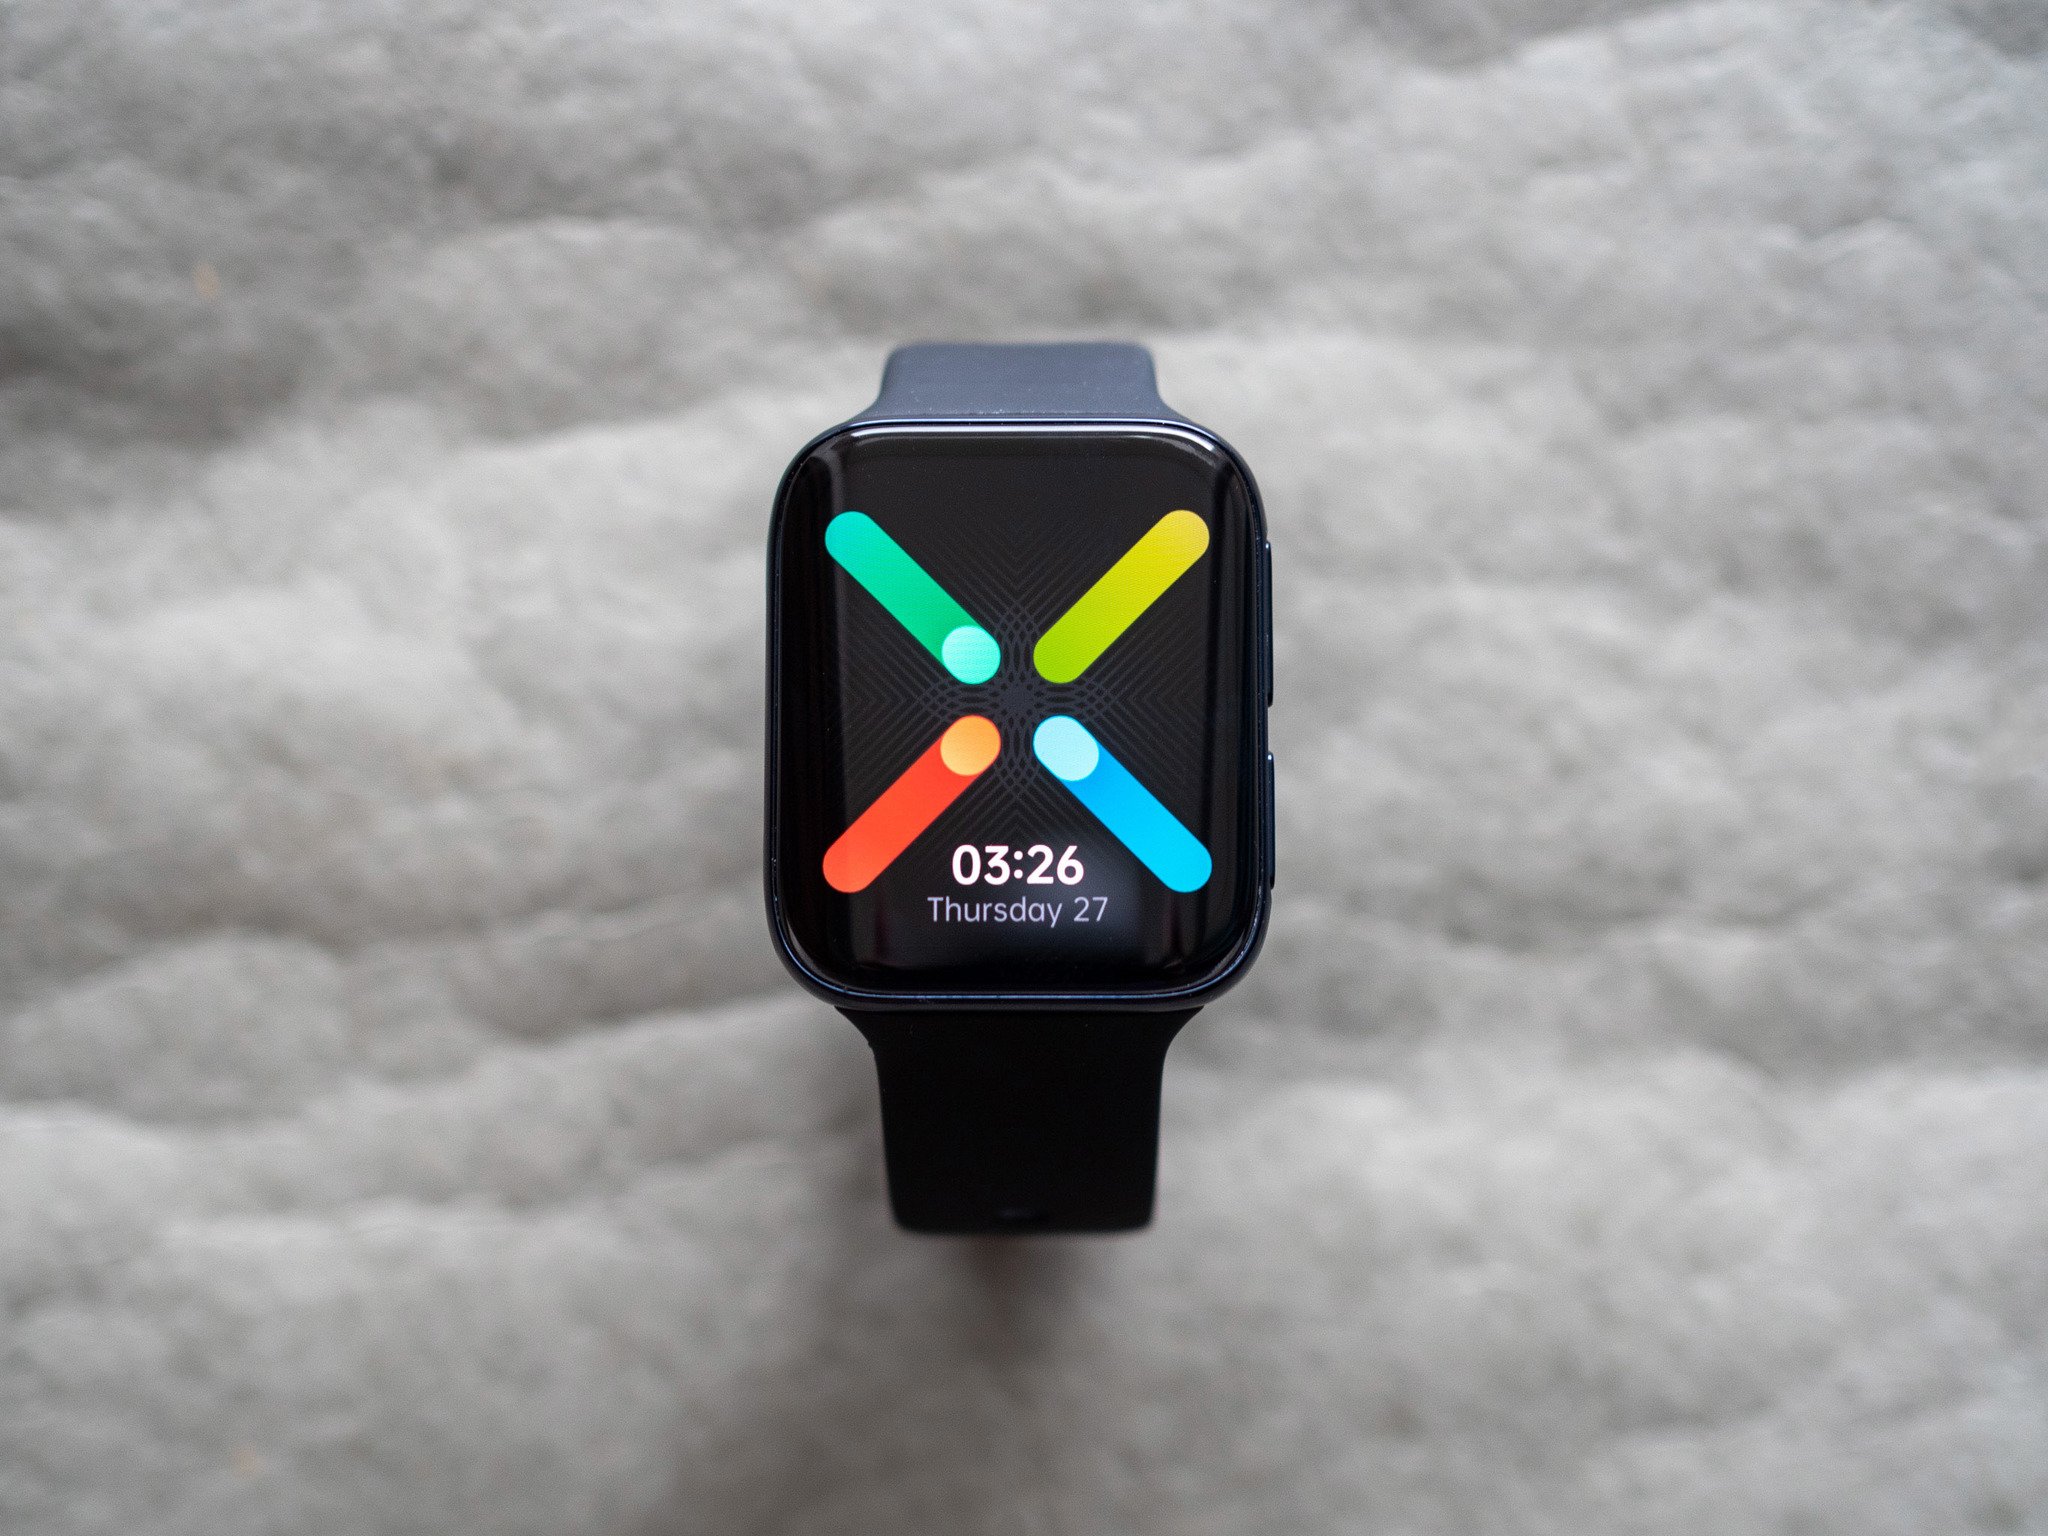 OPPO Watch 2 Snapdragon Wear 4100 - một siêu phẩm đồng hồ thông minh sử dụng chip Snapdragon mới nhất và tính năng cải tiến nhiều hơn. Với thiết kế thời trang và tính năng thông minh, đây là một sản phẩm không thể bỏ qua. Xem hình liên quan để tìm hiểu thêm.